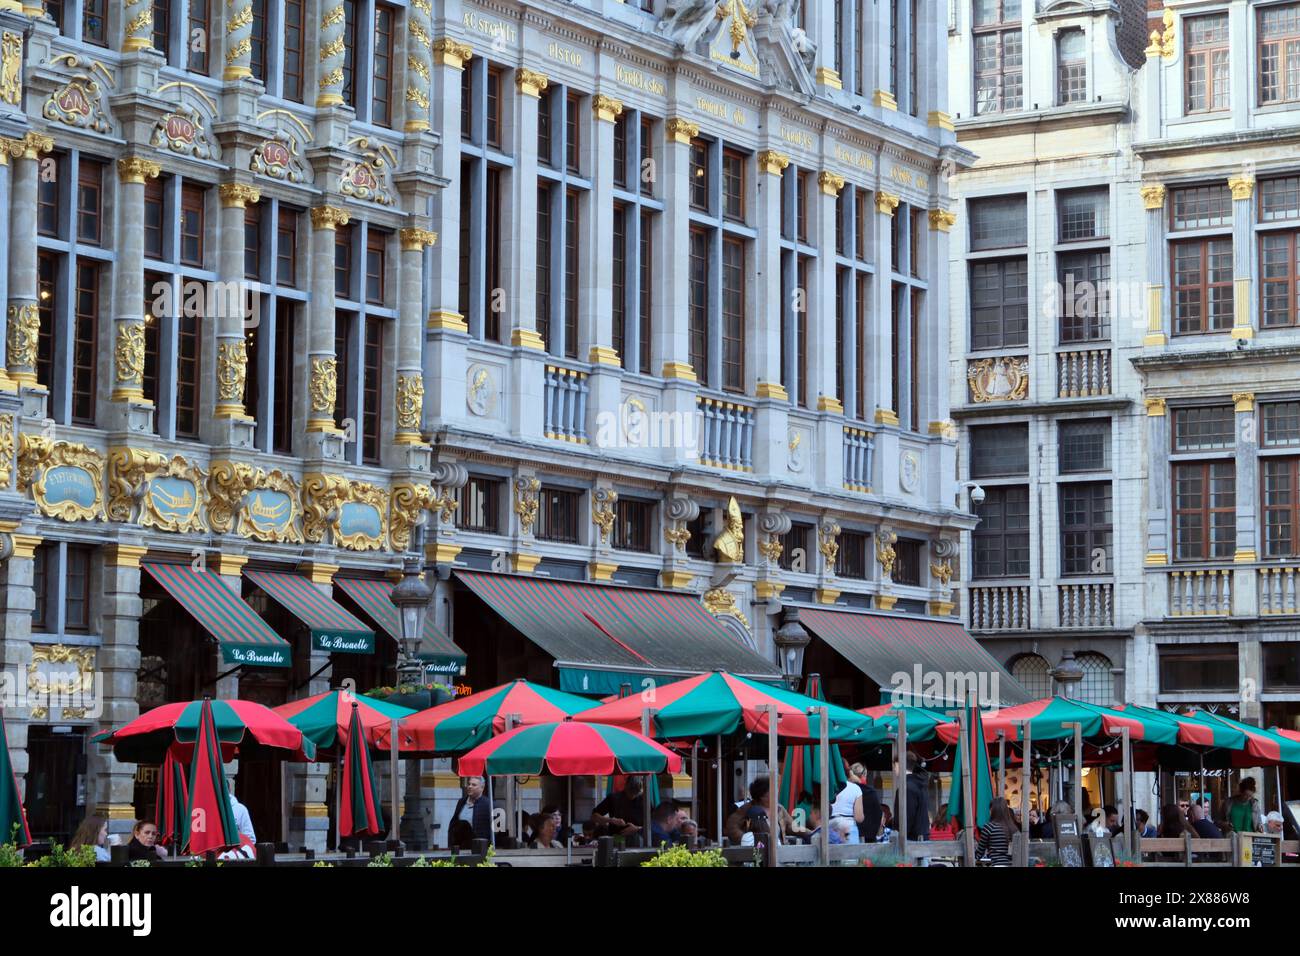 Bâtiments historiques sur la Grand-place ou Grote Markt ila place centrale de Bruxelles, Belgique Banque D'Images